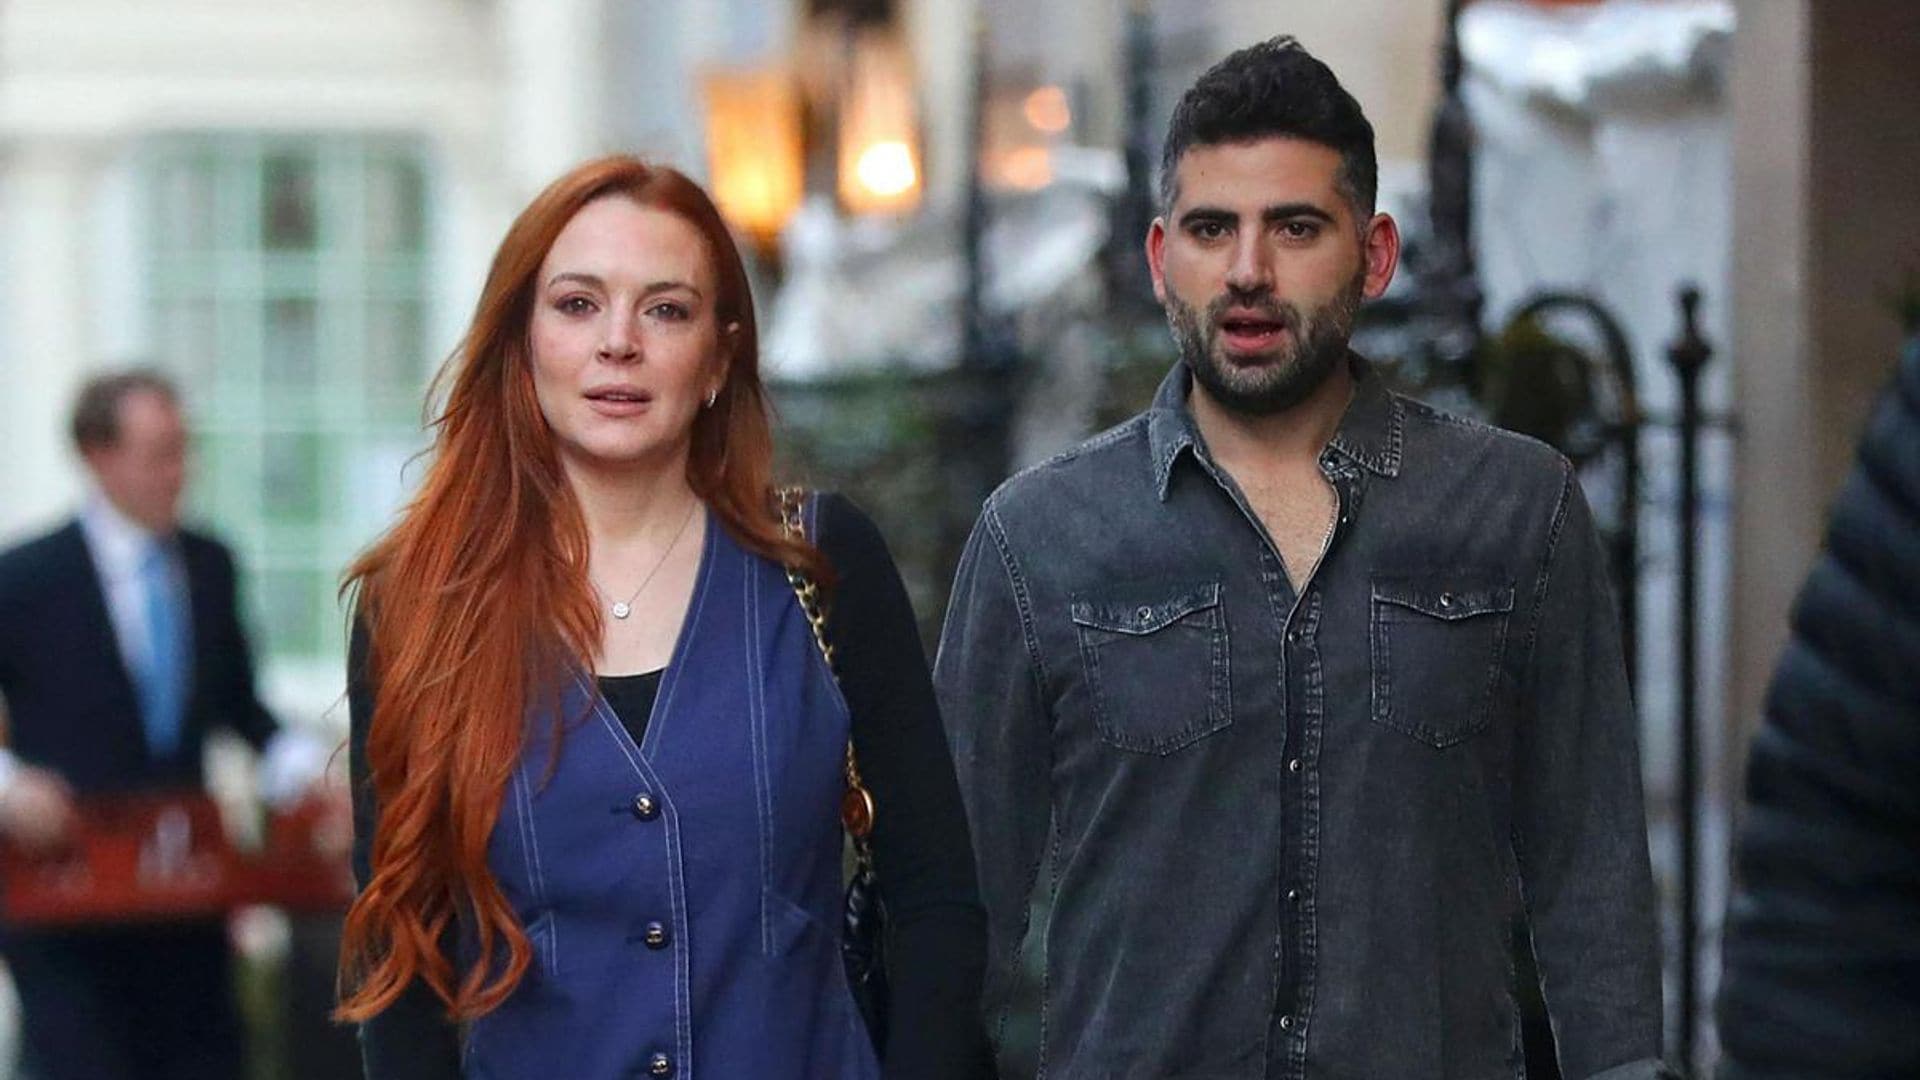 Lindsay Lohan and her husband Bader Shammas are vacationing in London